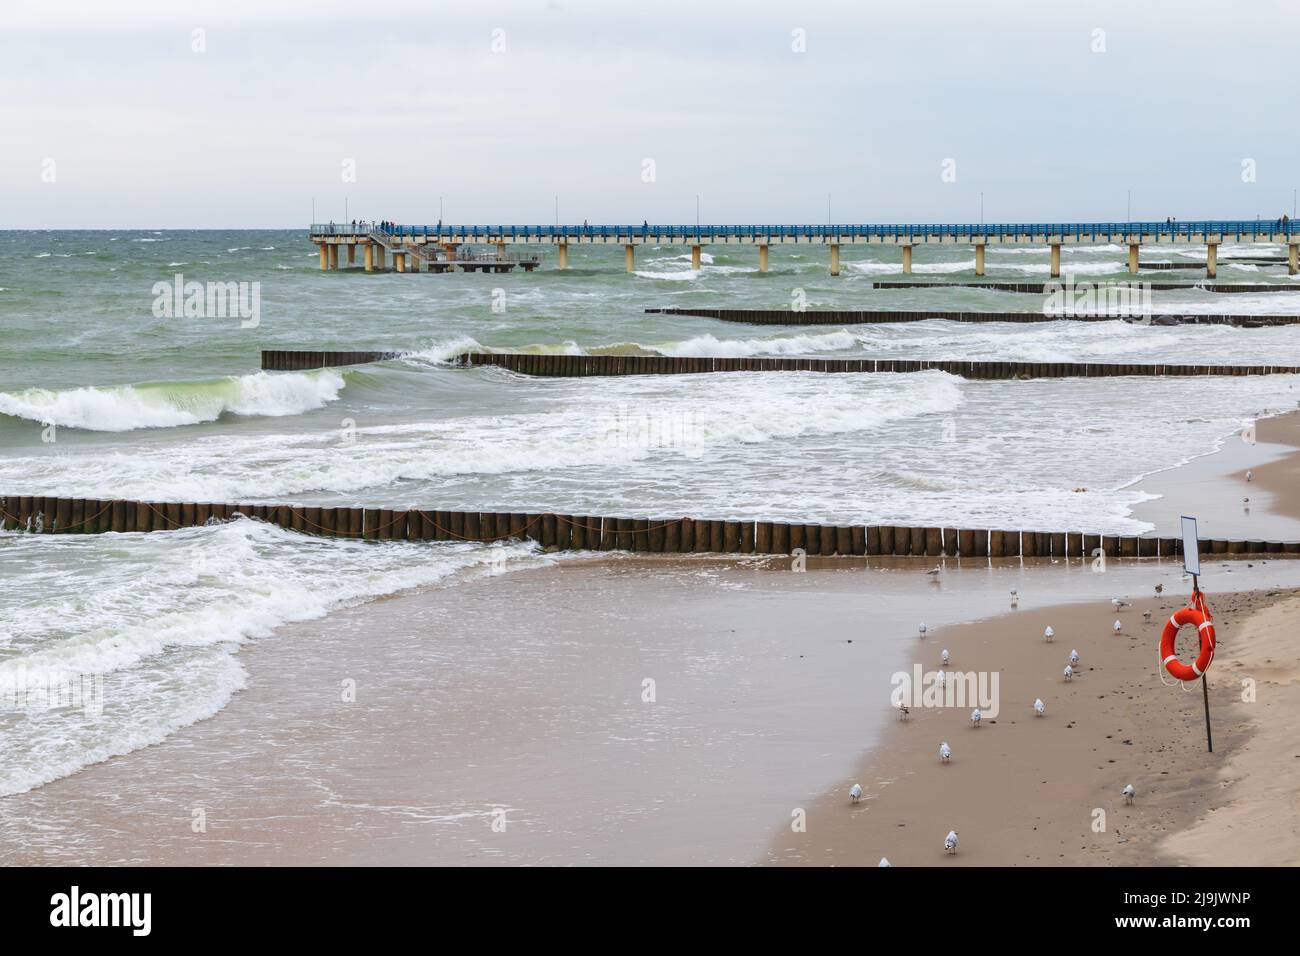 Vista sulla spiaggia con frangiflutti in legno e molo, foto del paesaggio della costa del Mar Baltico. Zelenogradsk, Kaliningrad Oblast, Russia Foto Stock